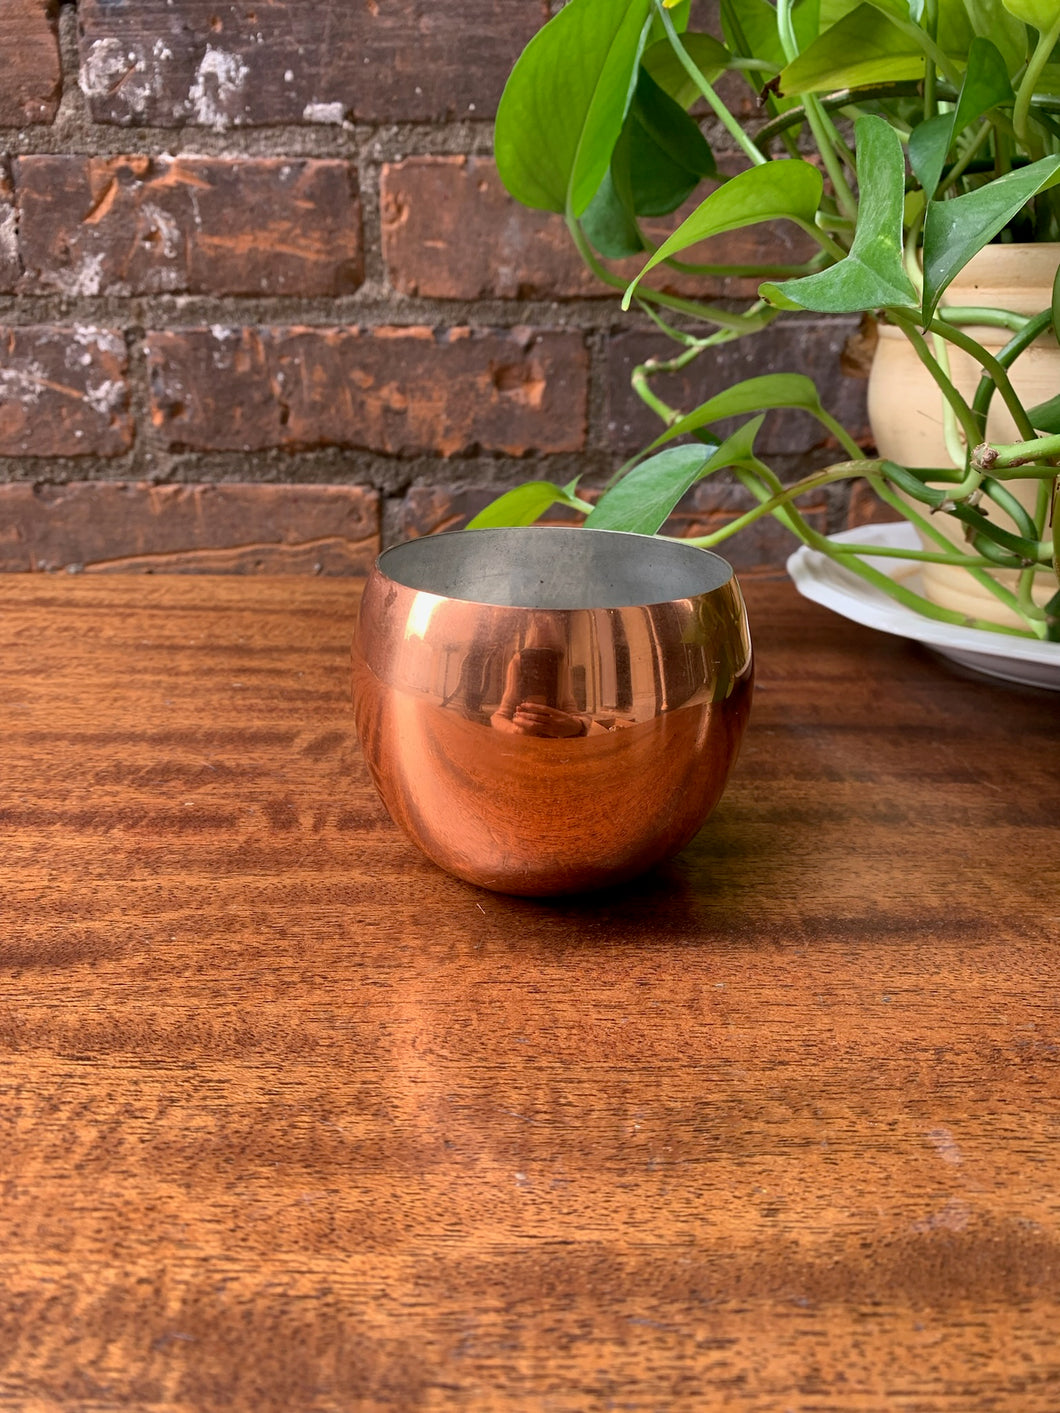 Small Copper Cup